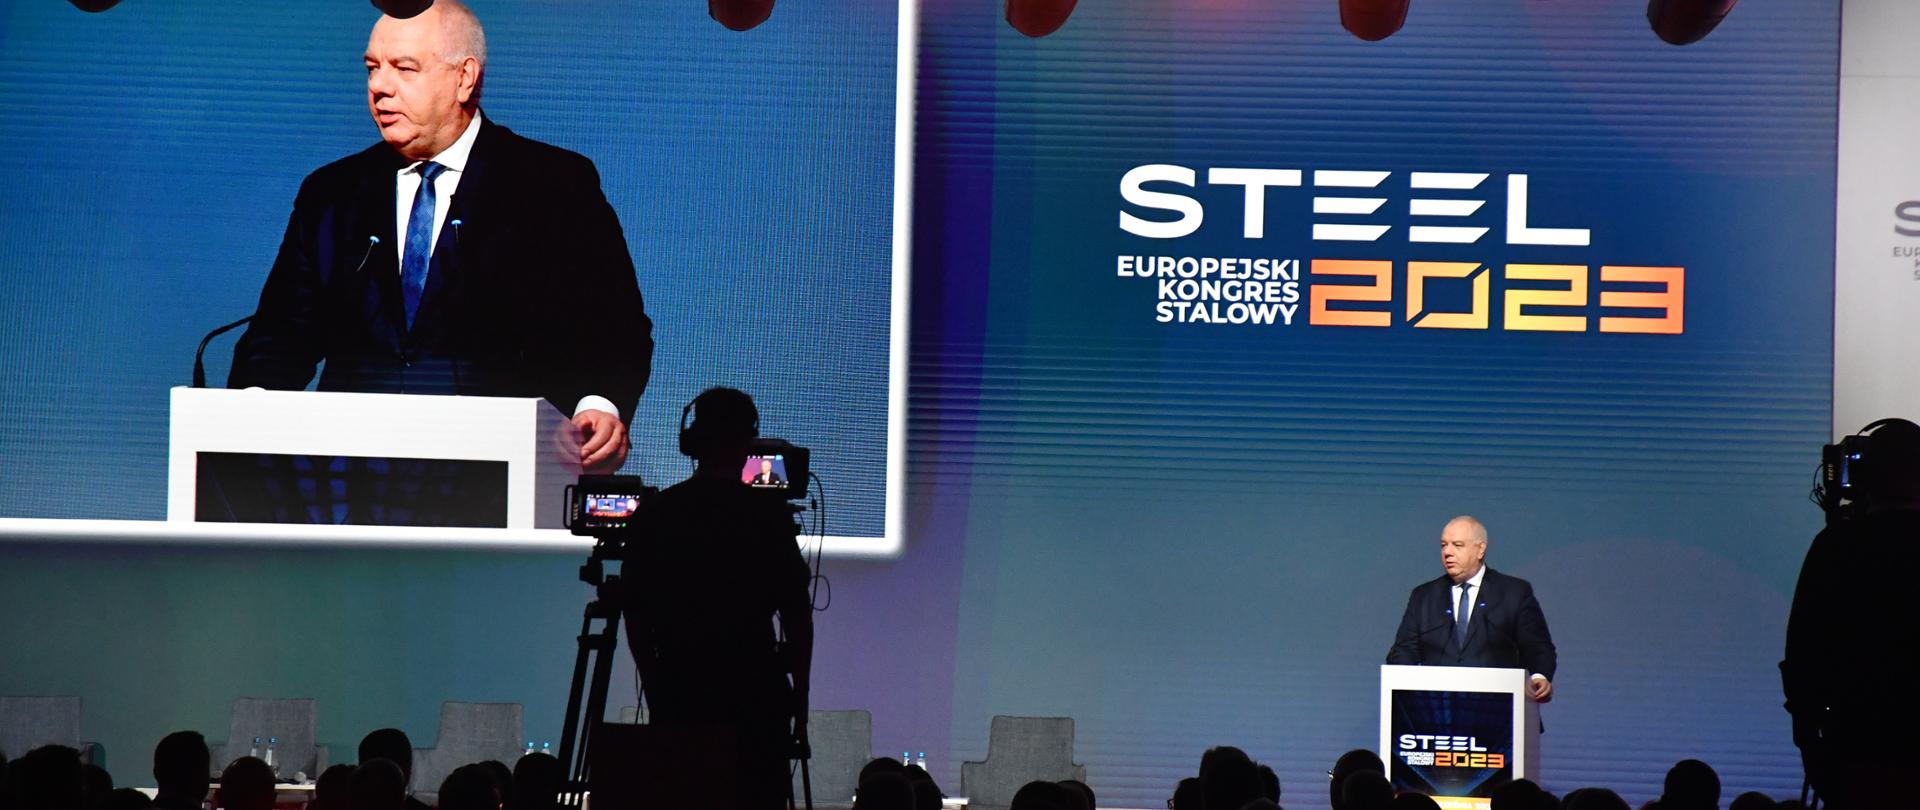 Minister Jacek Sasin podczas otwarcia Europejskiego Kongresu Stalowego Steel 2023.